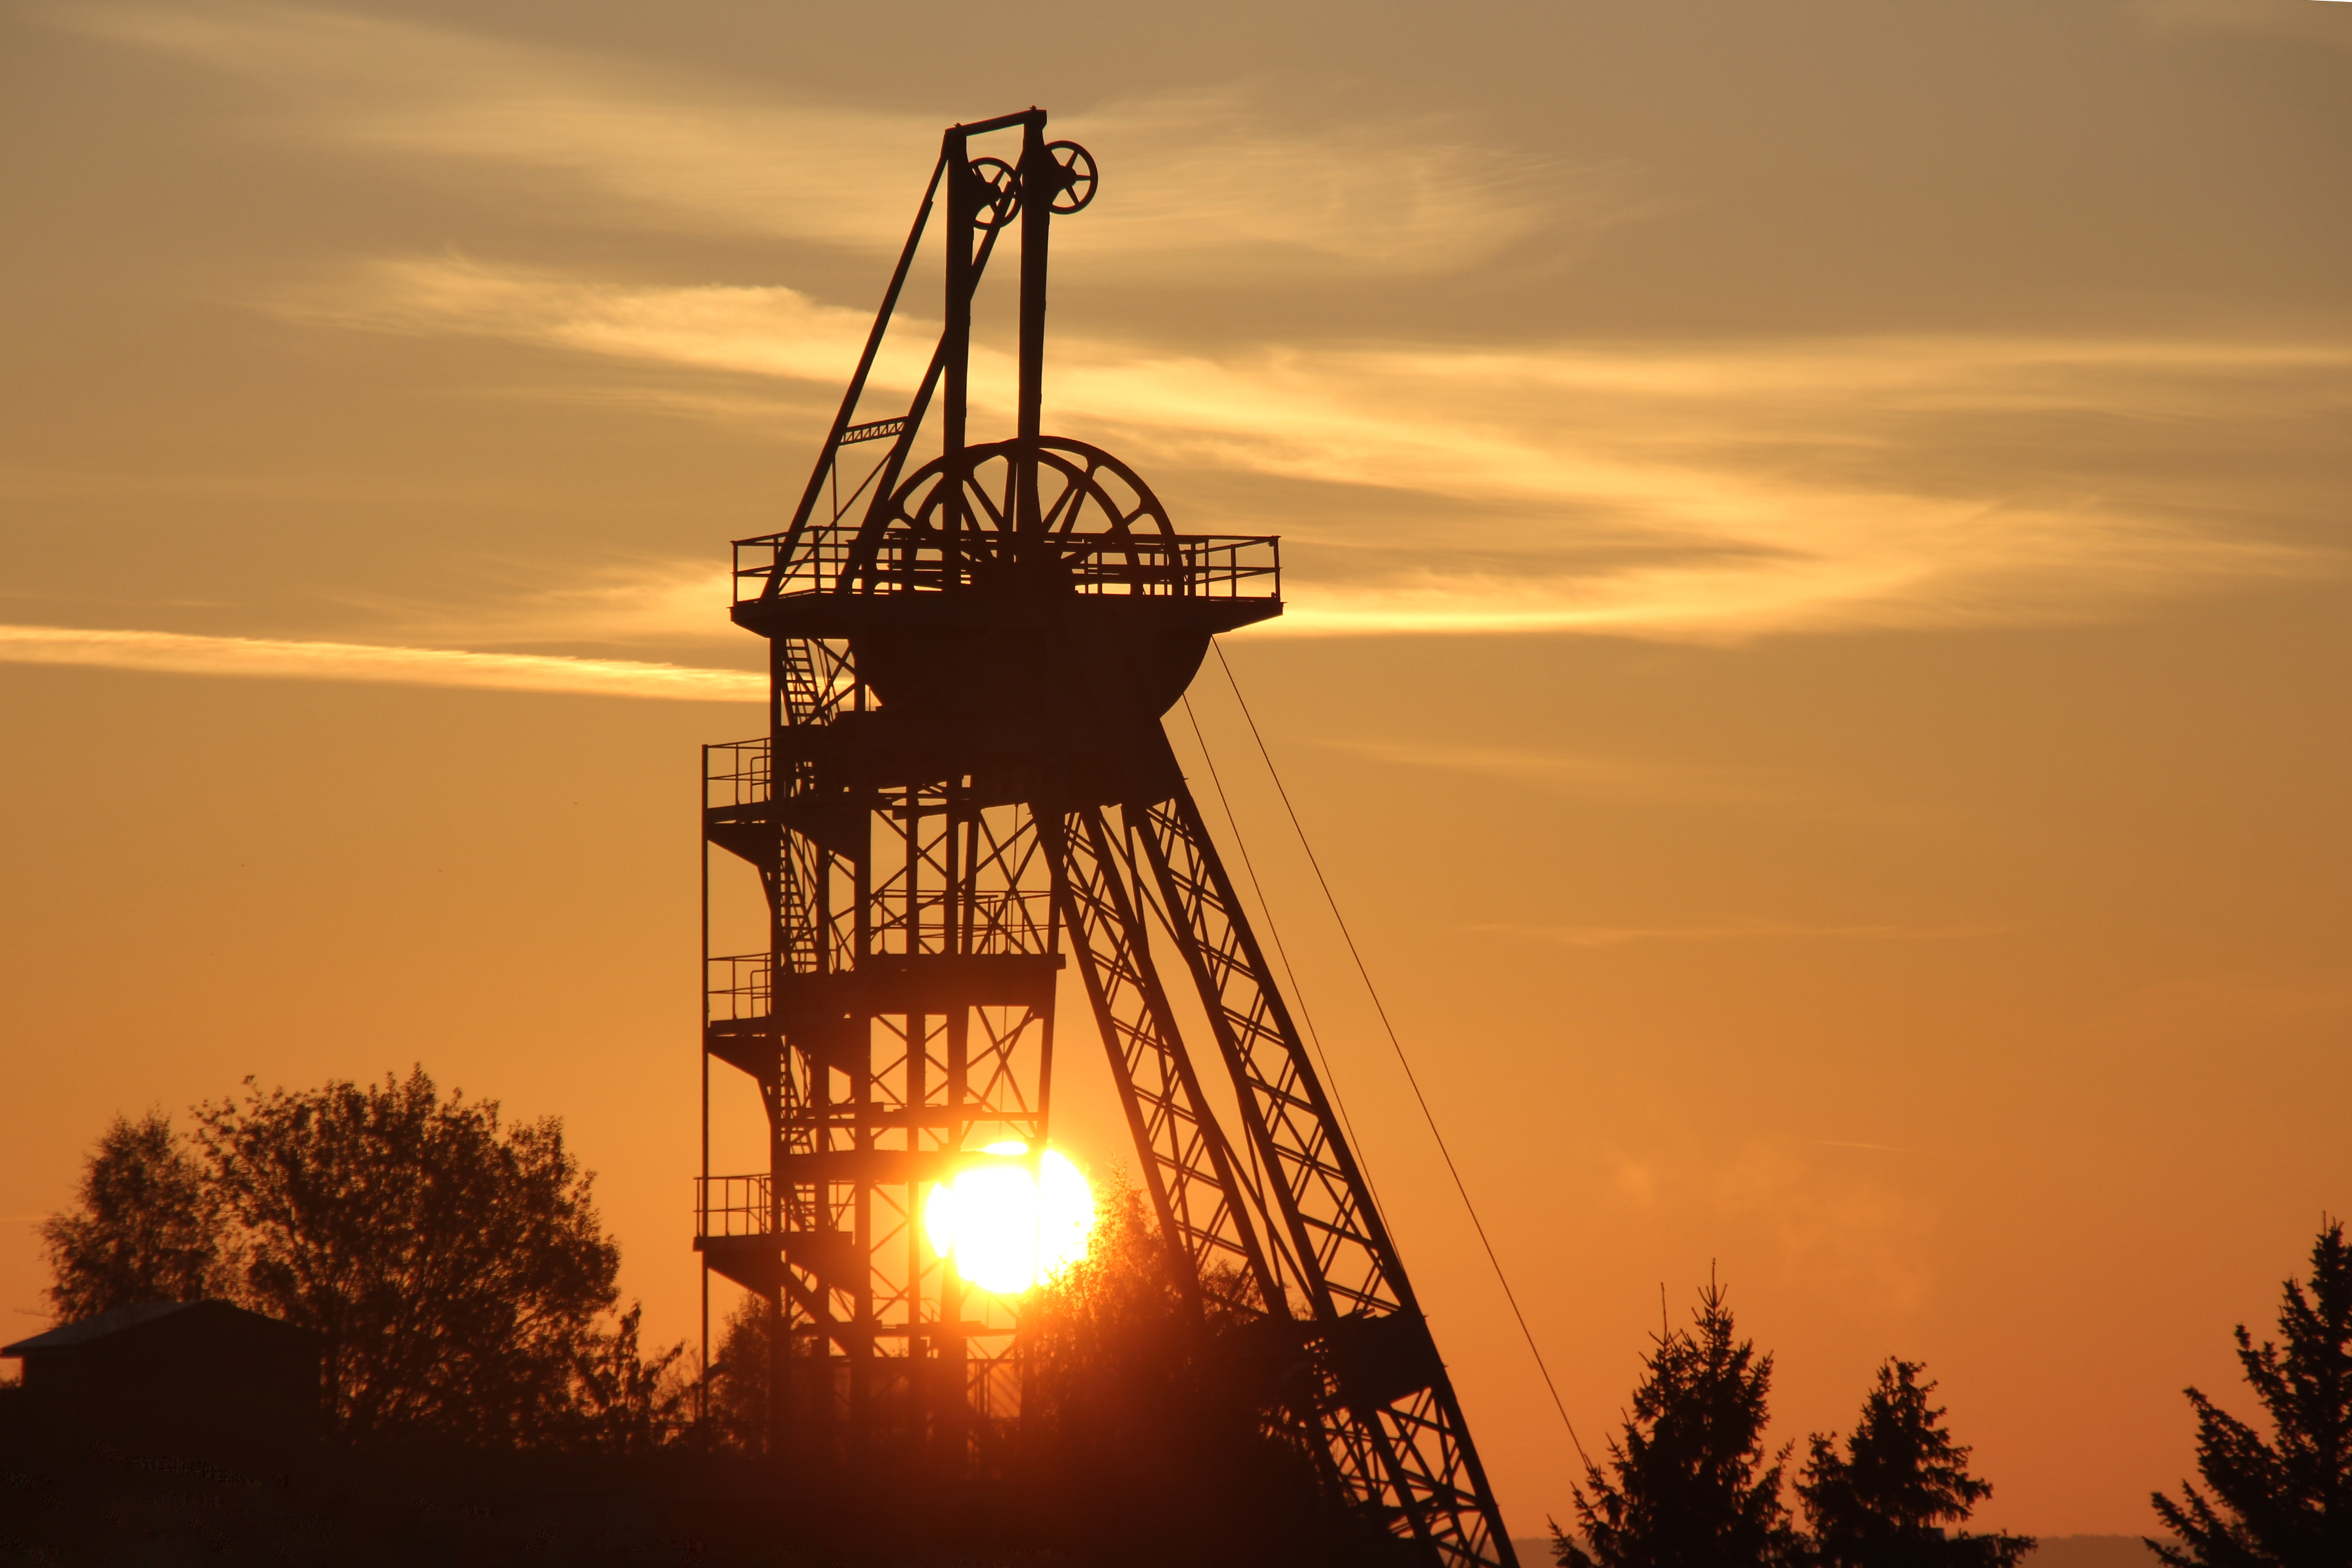 Besuch des Schaubergwerkes Röhrigschacht inkl. Bergwerksführung unter Tage